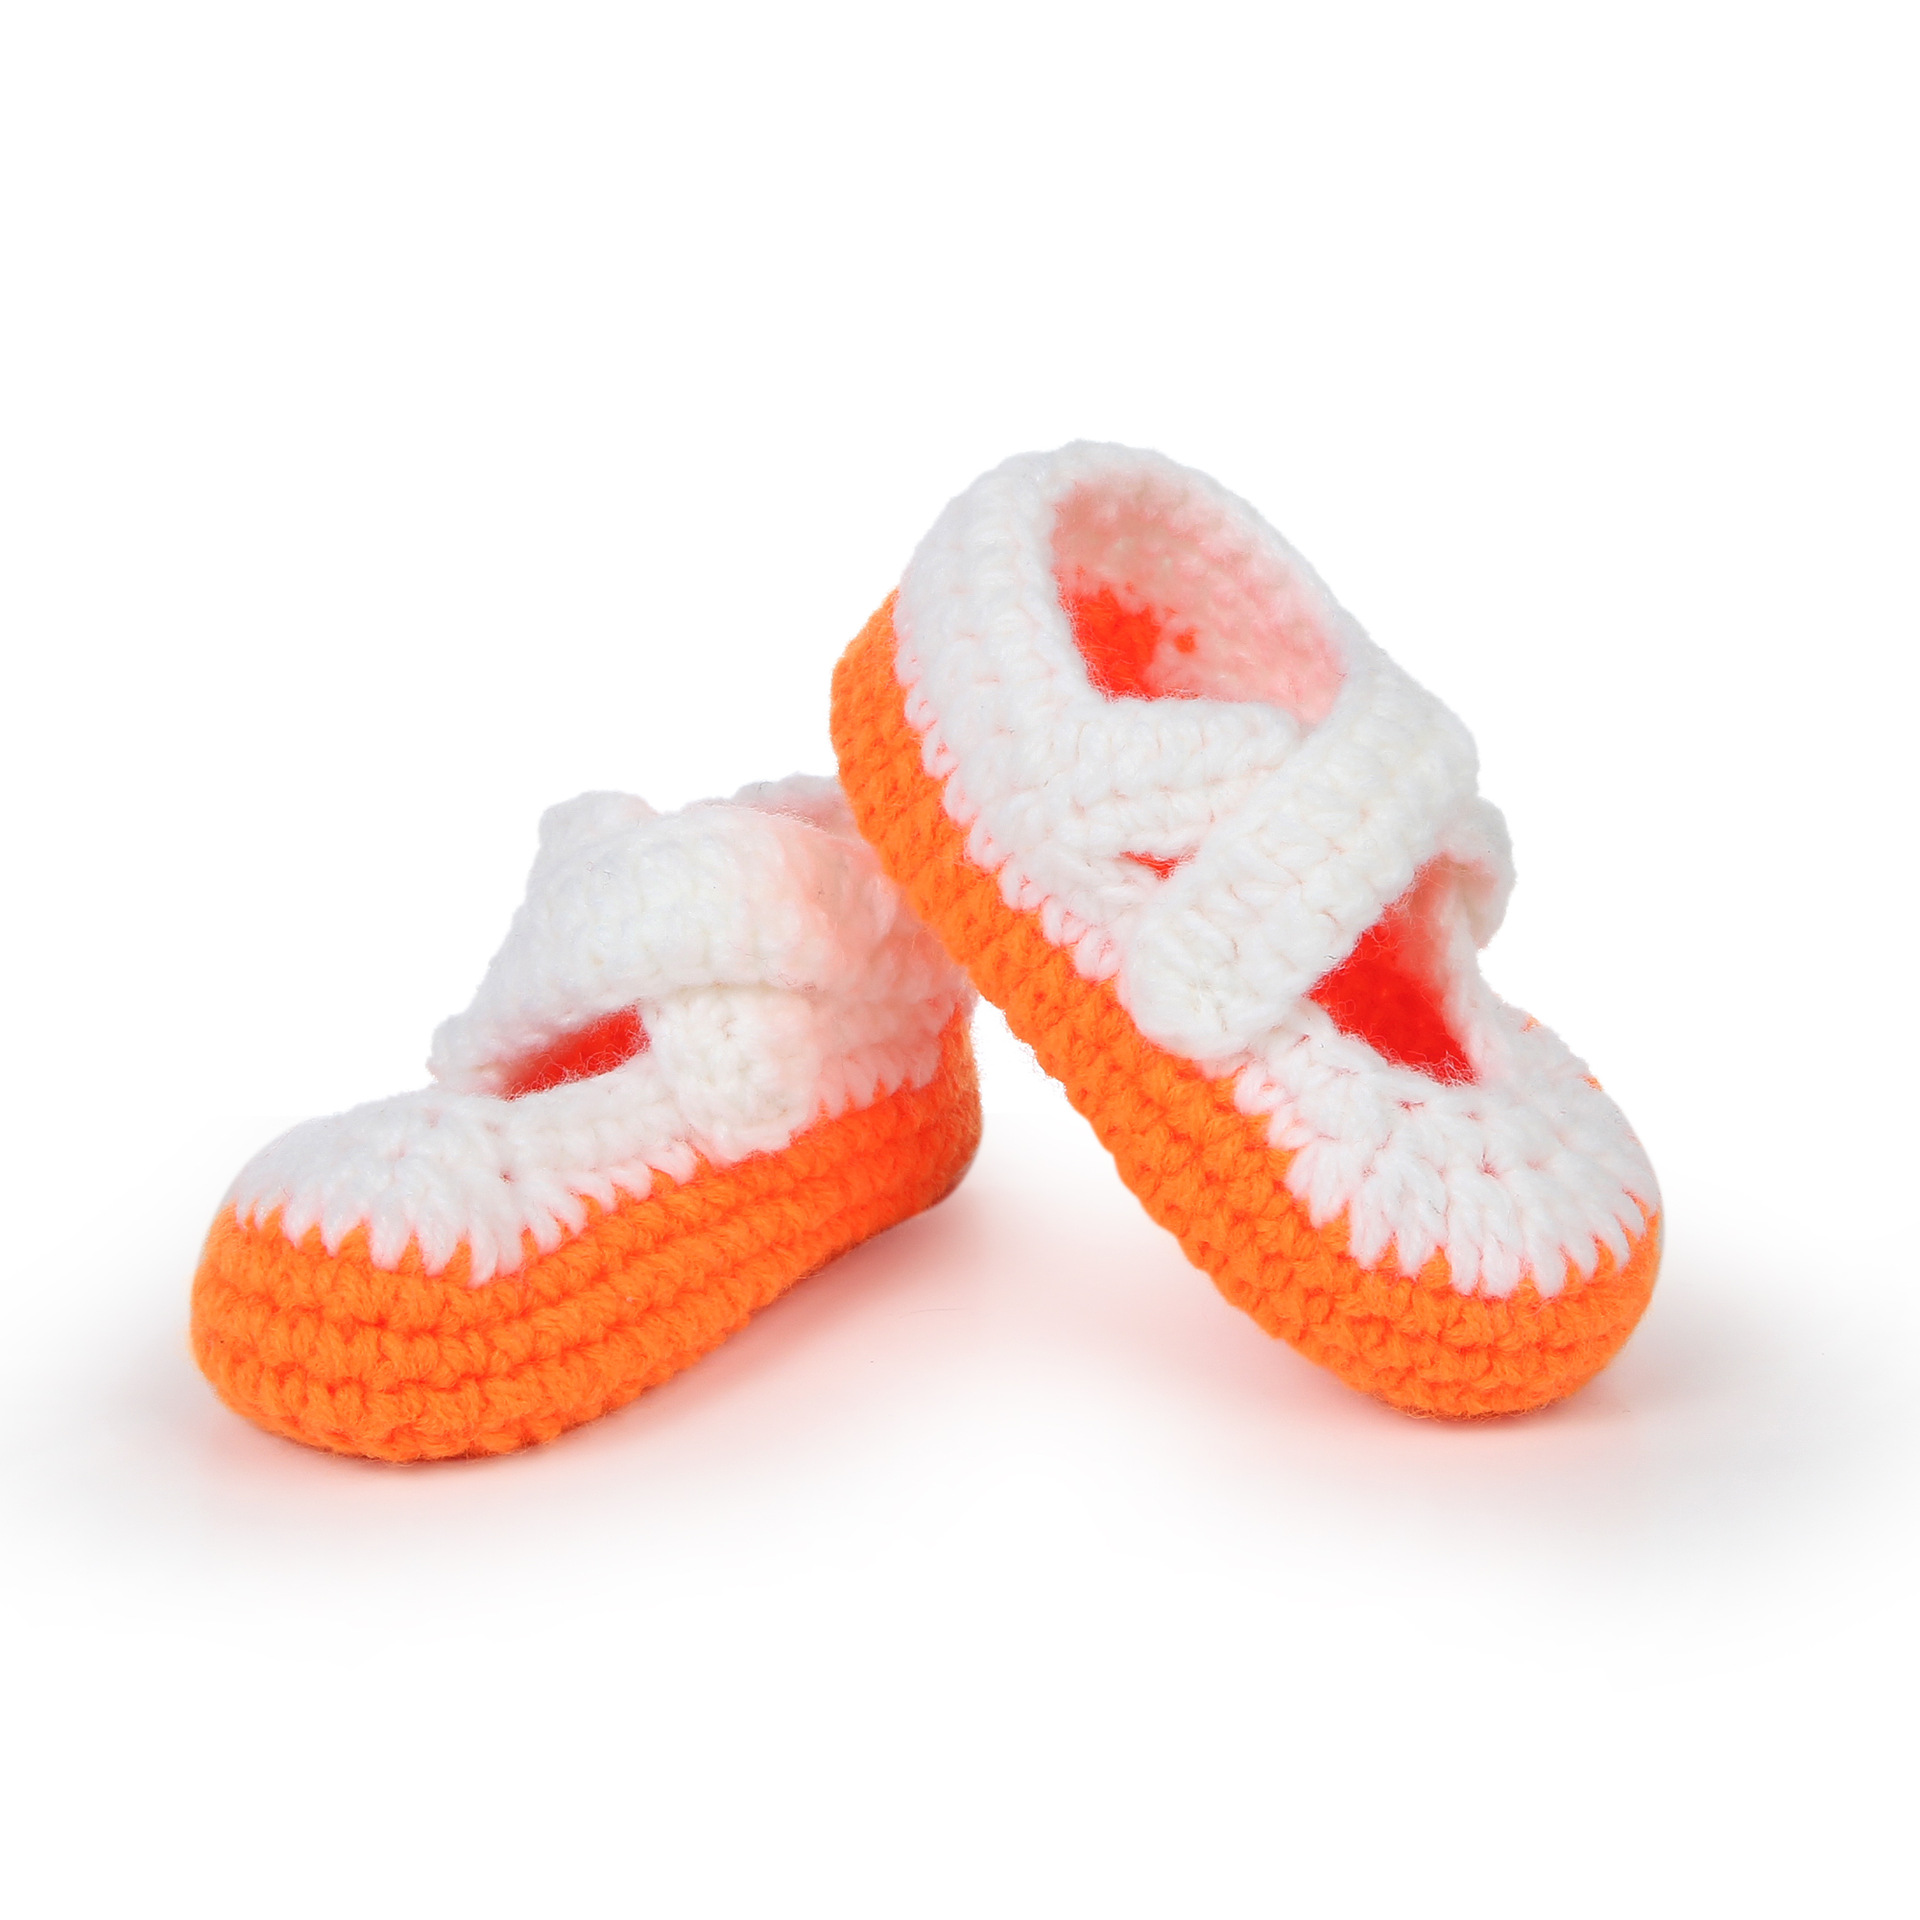 新款童鞋 手工编织婴儿软底学步鞋 婴儿鞋 XD-219